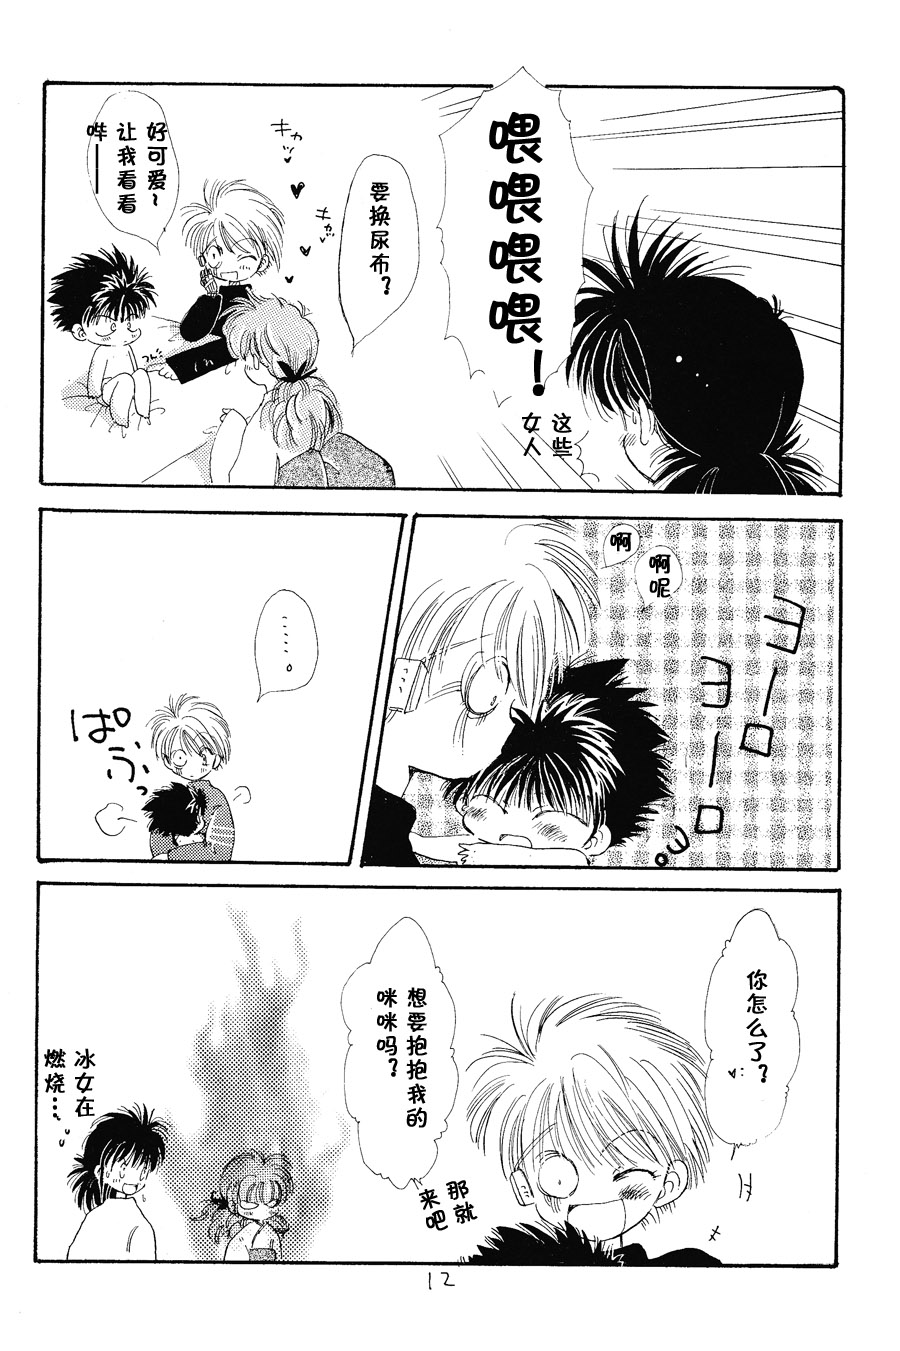 【漫画】PIKAPIKA/タカハシマコ《切腹咖啡》 Img_6849